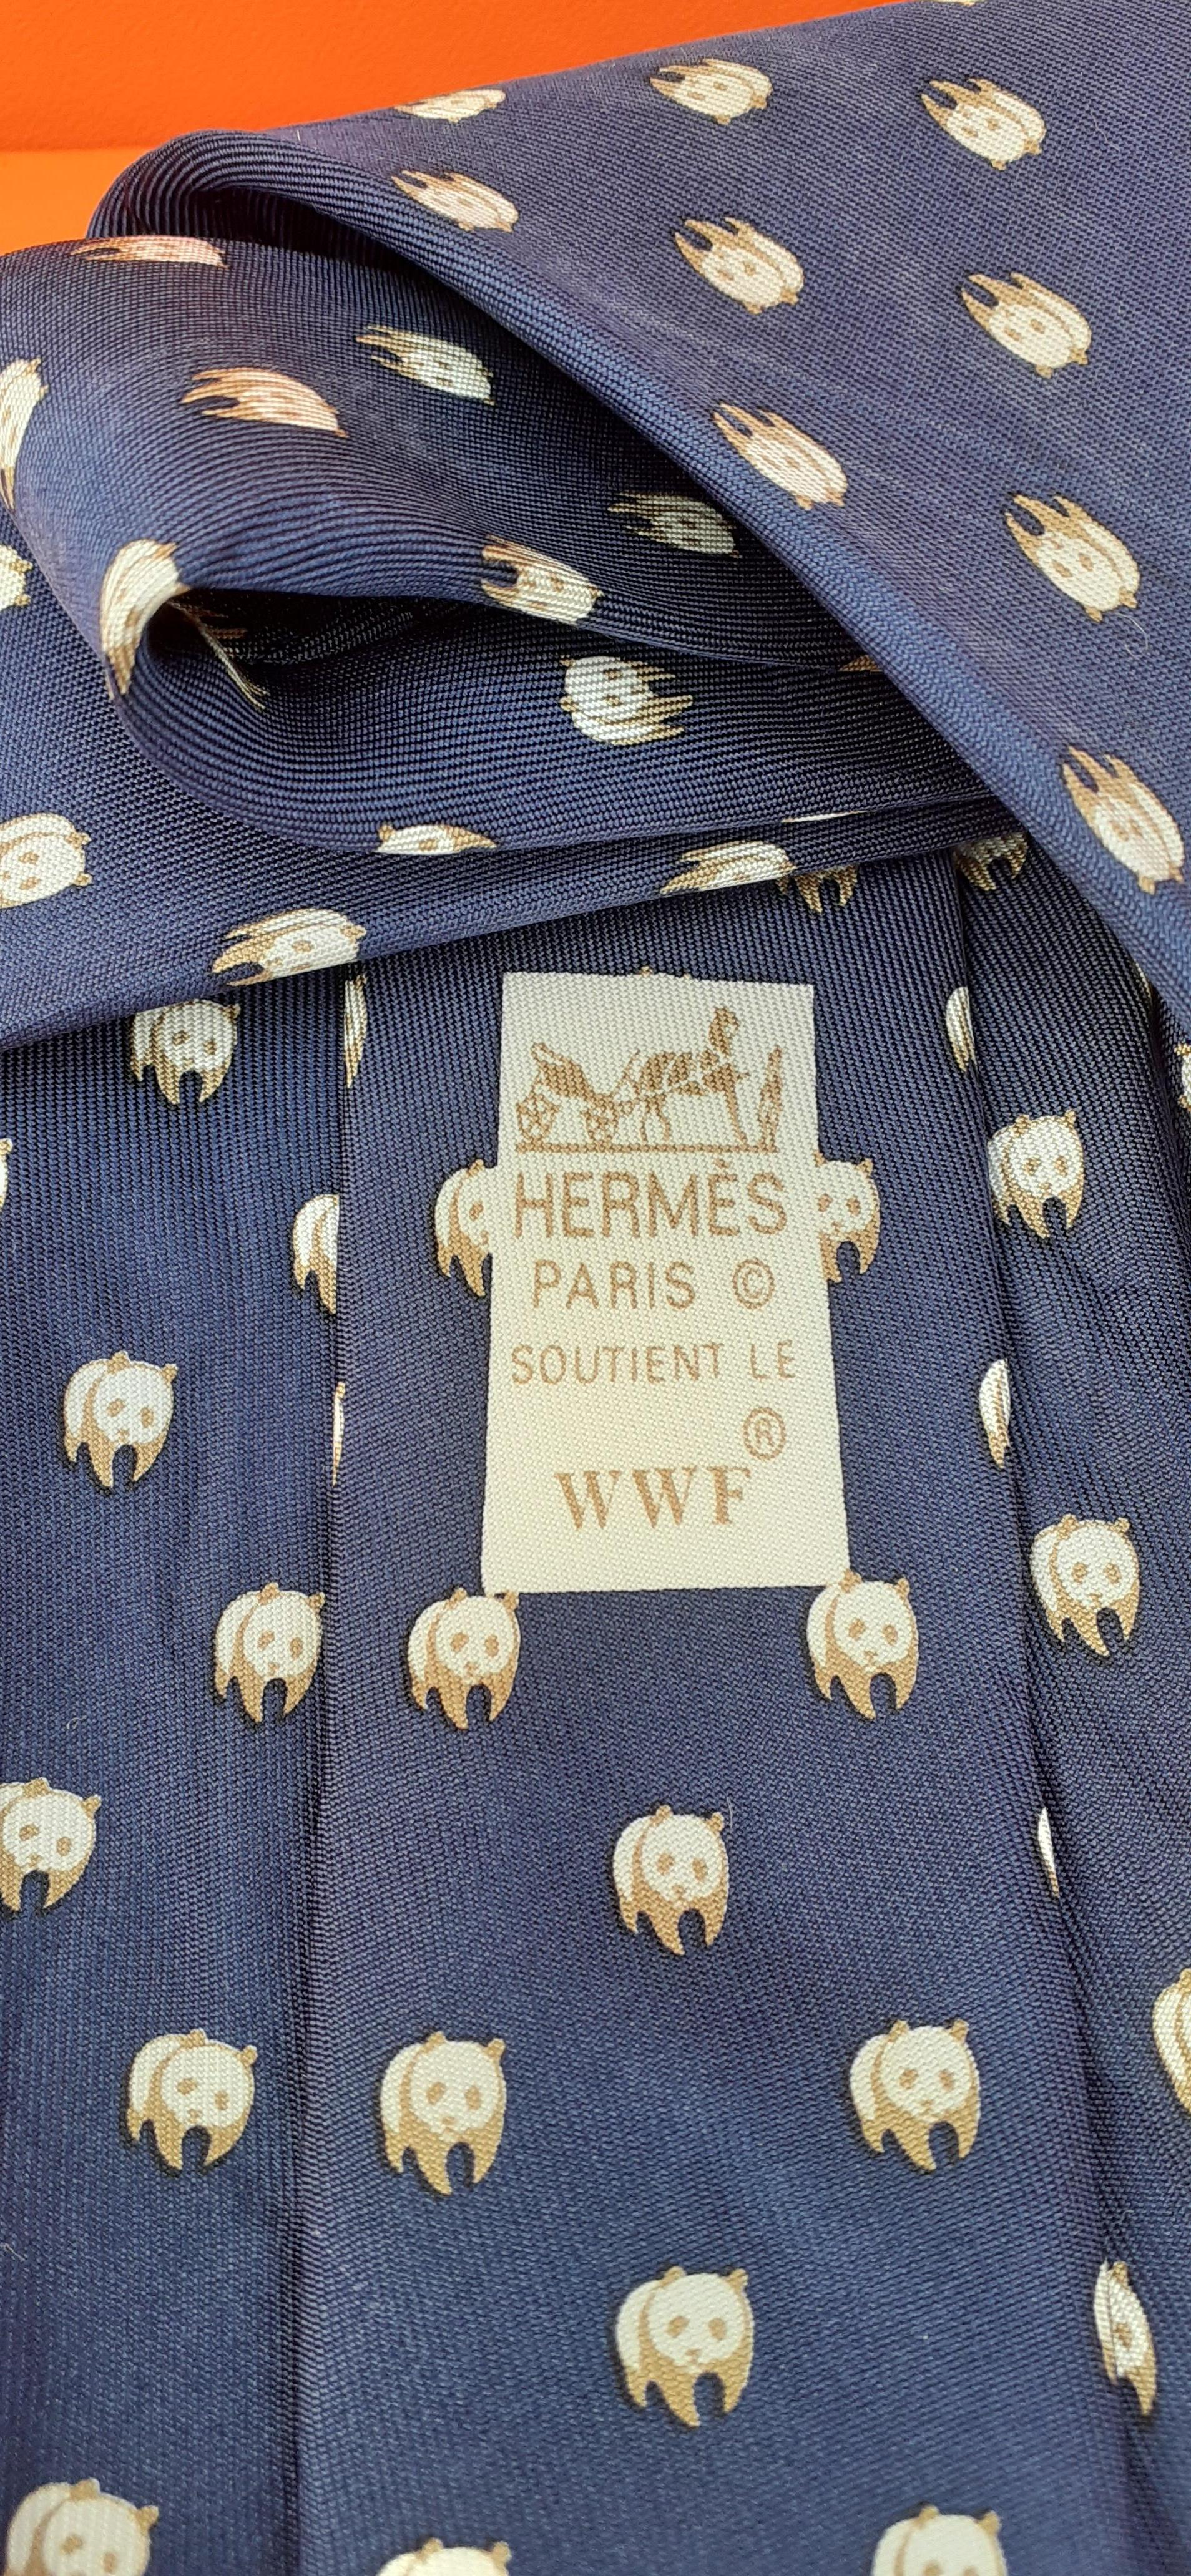 Adorable Hermès for WWF Tie Panda Pattern 3